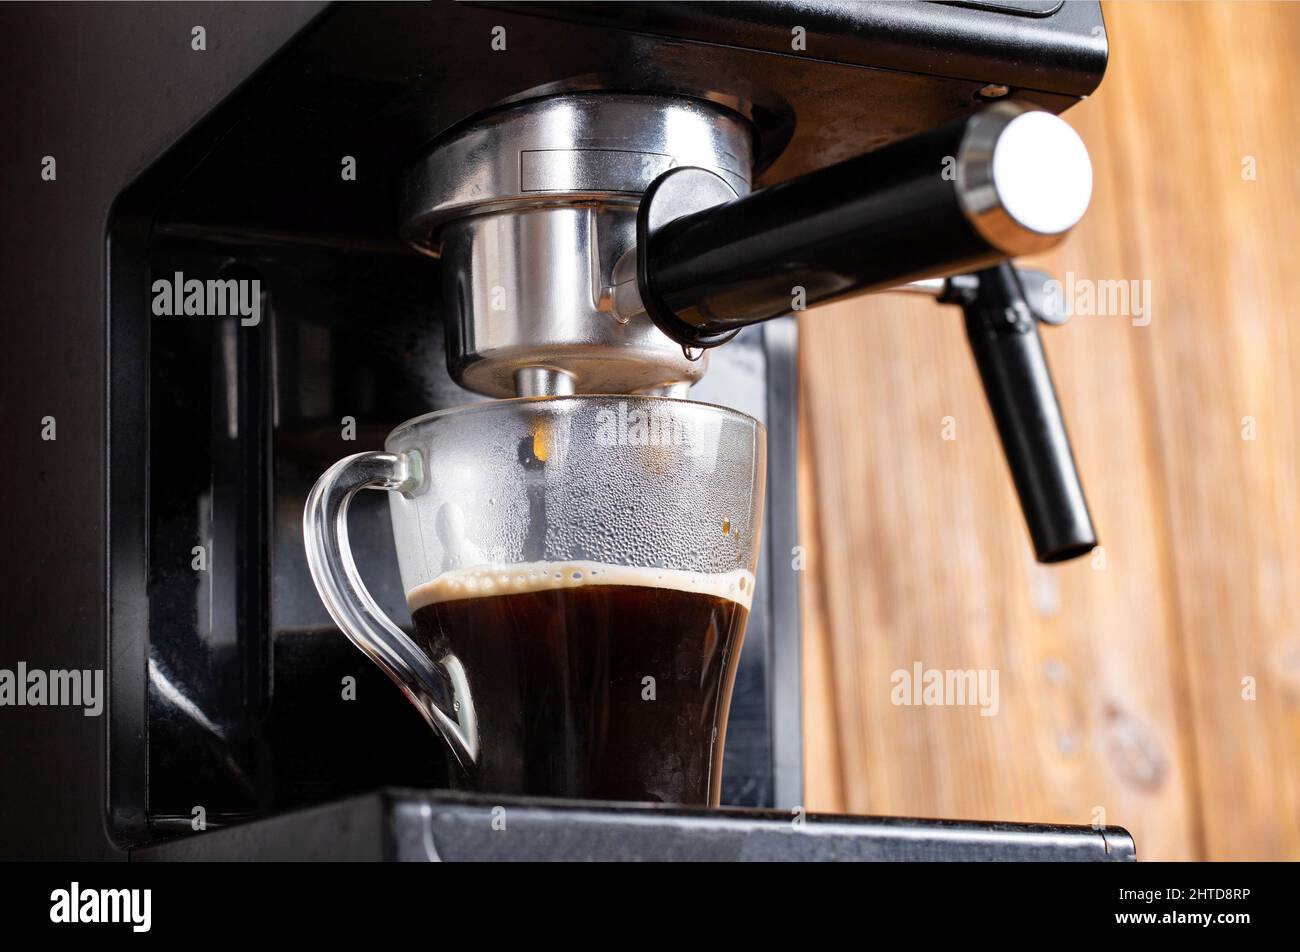 https://c8.alamy.com/compes/2htd8rp/preparar-cafe-en-una-cafetera-en-la-cocina-cerca-cafe-negro-que-fluye-en-una-taza-transparente-sobre-un-fondo-de-mesa-de-madera-cafeina-2htd8rp.jpg